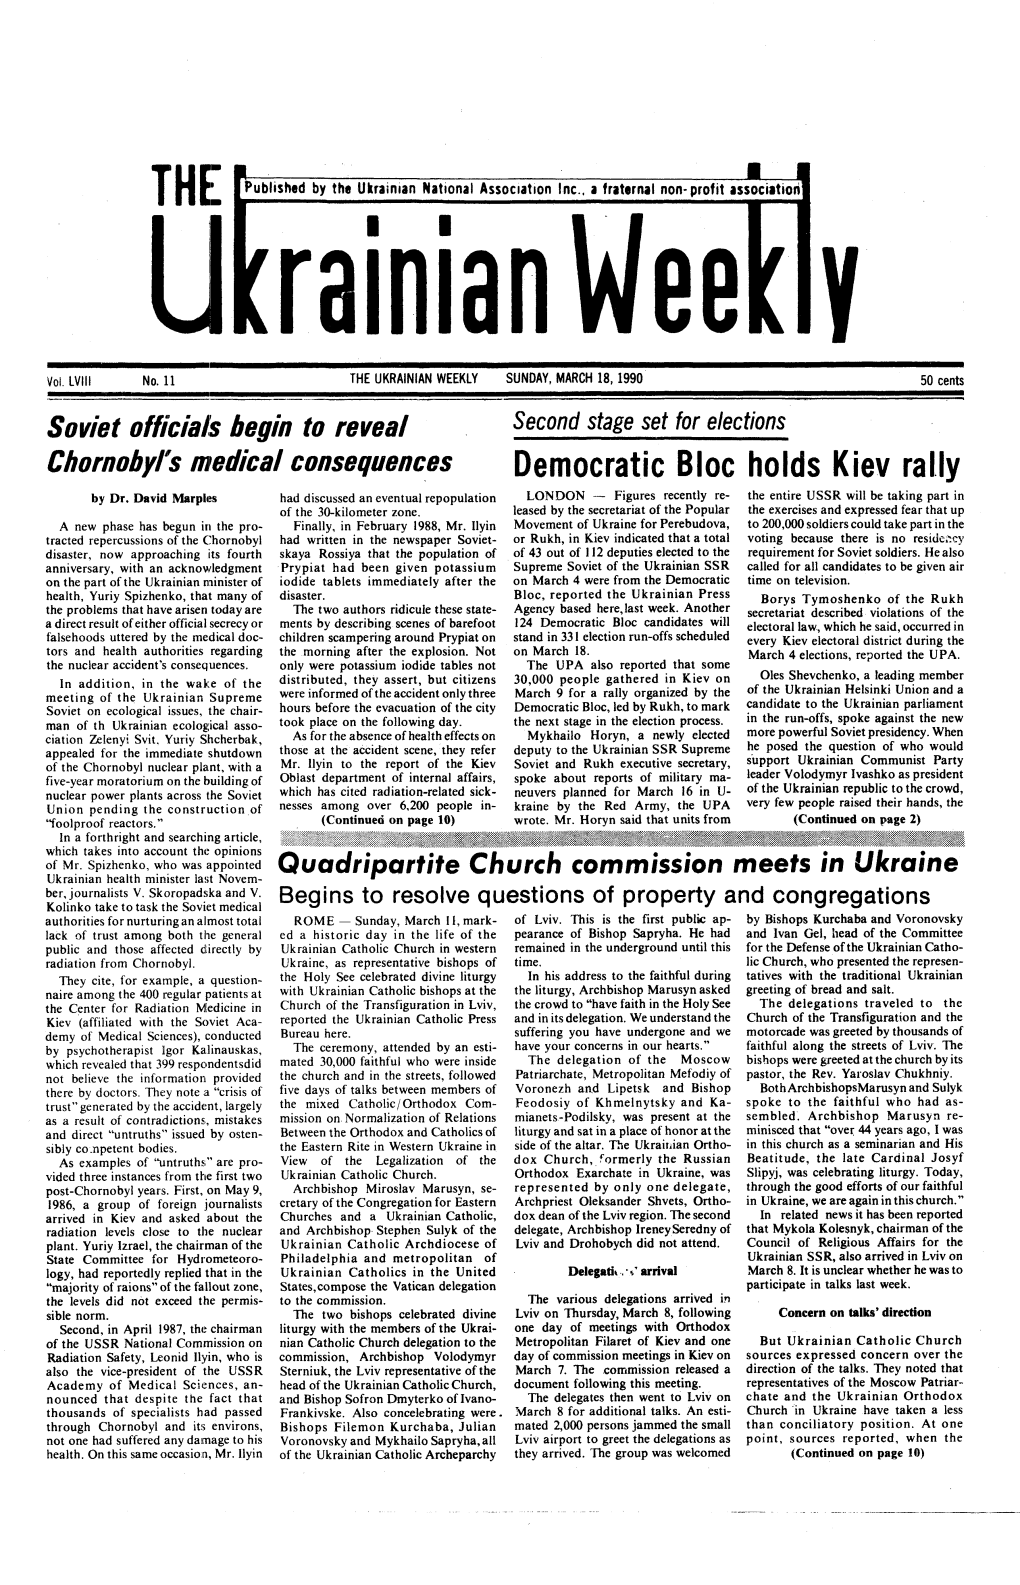 The Ukrainian Weekly 1990